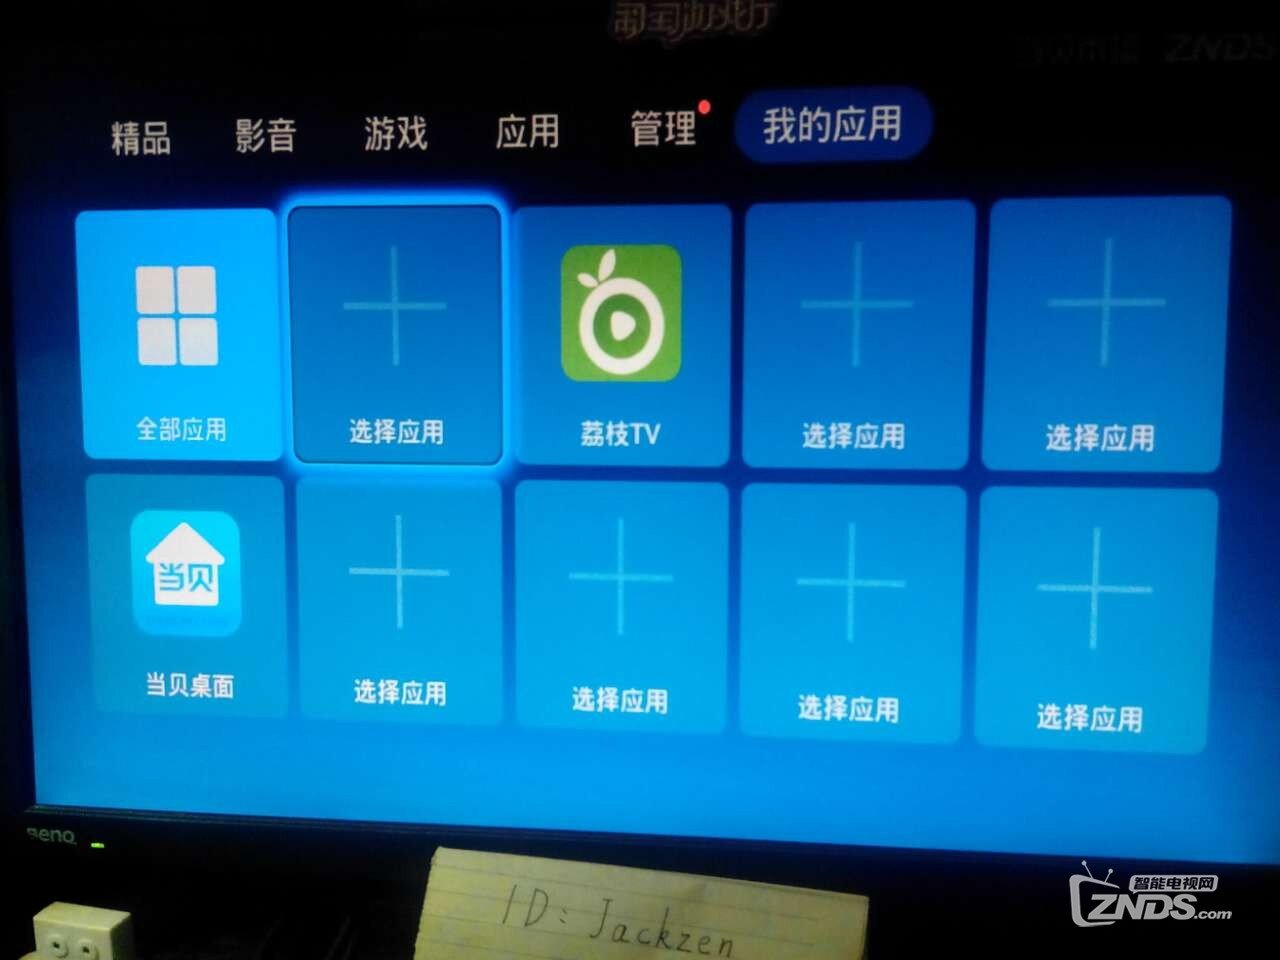 爱奇艺荔枝TV升级3.0,看《盗墓笔记》赢假日好